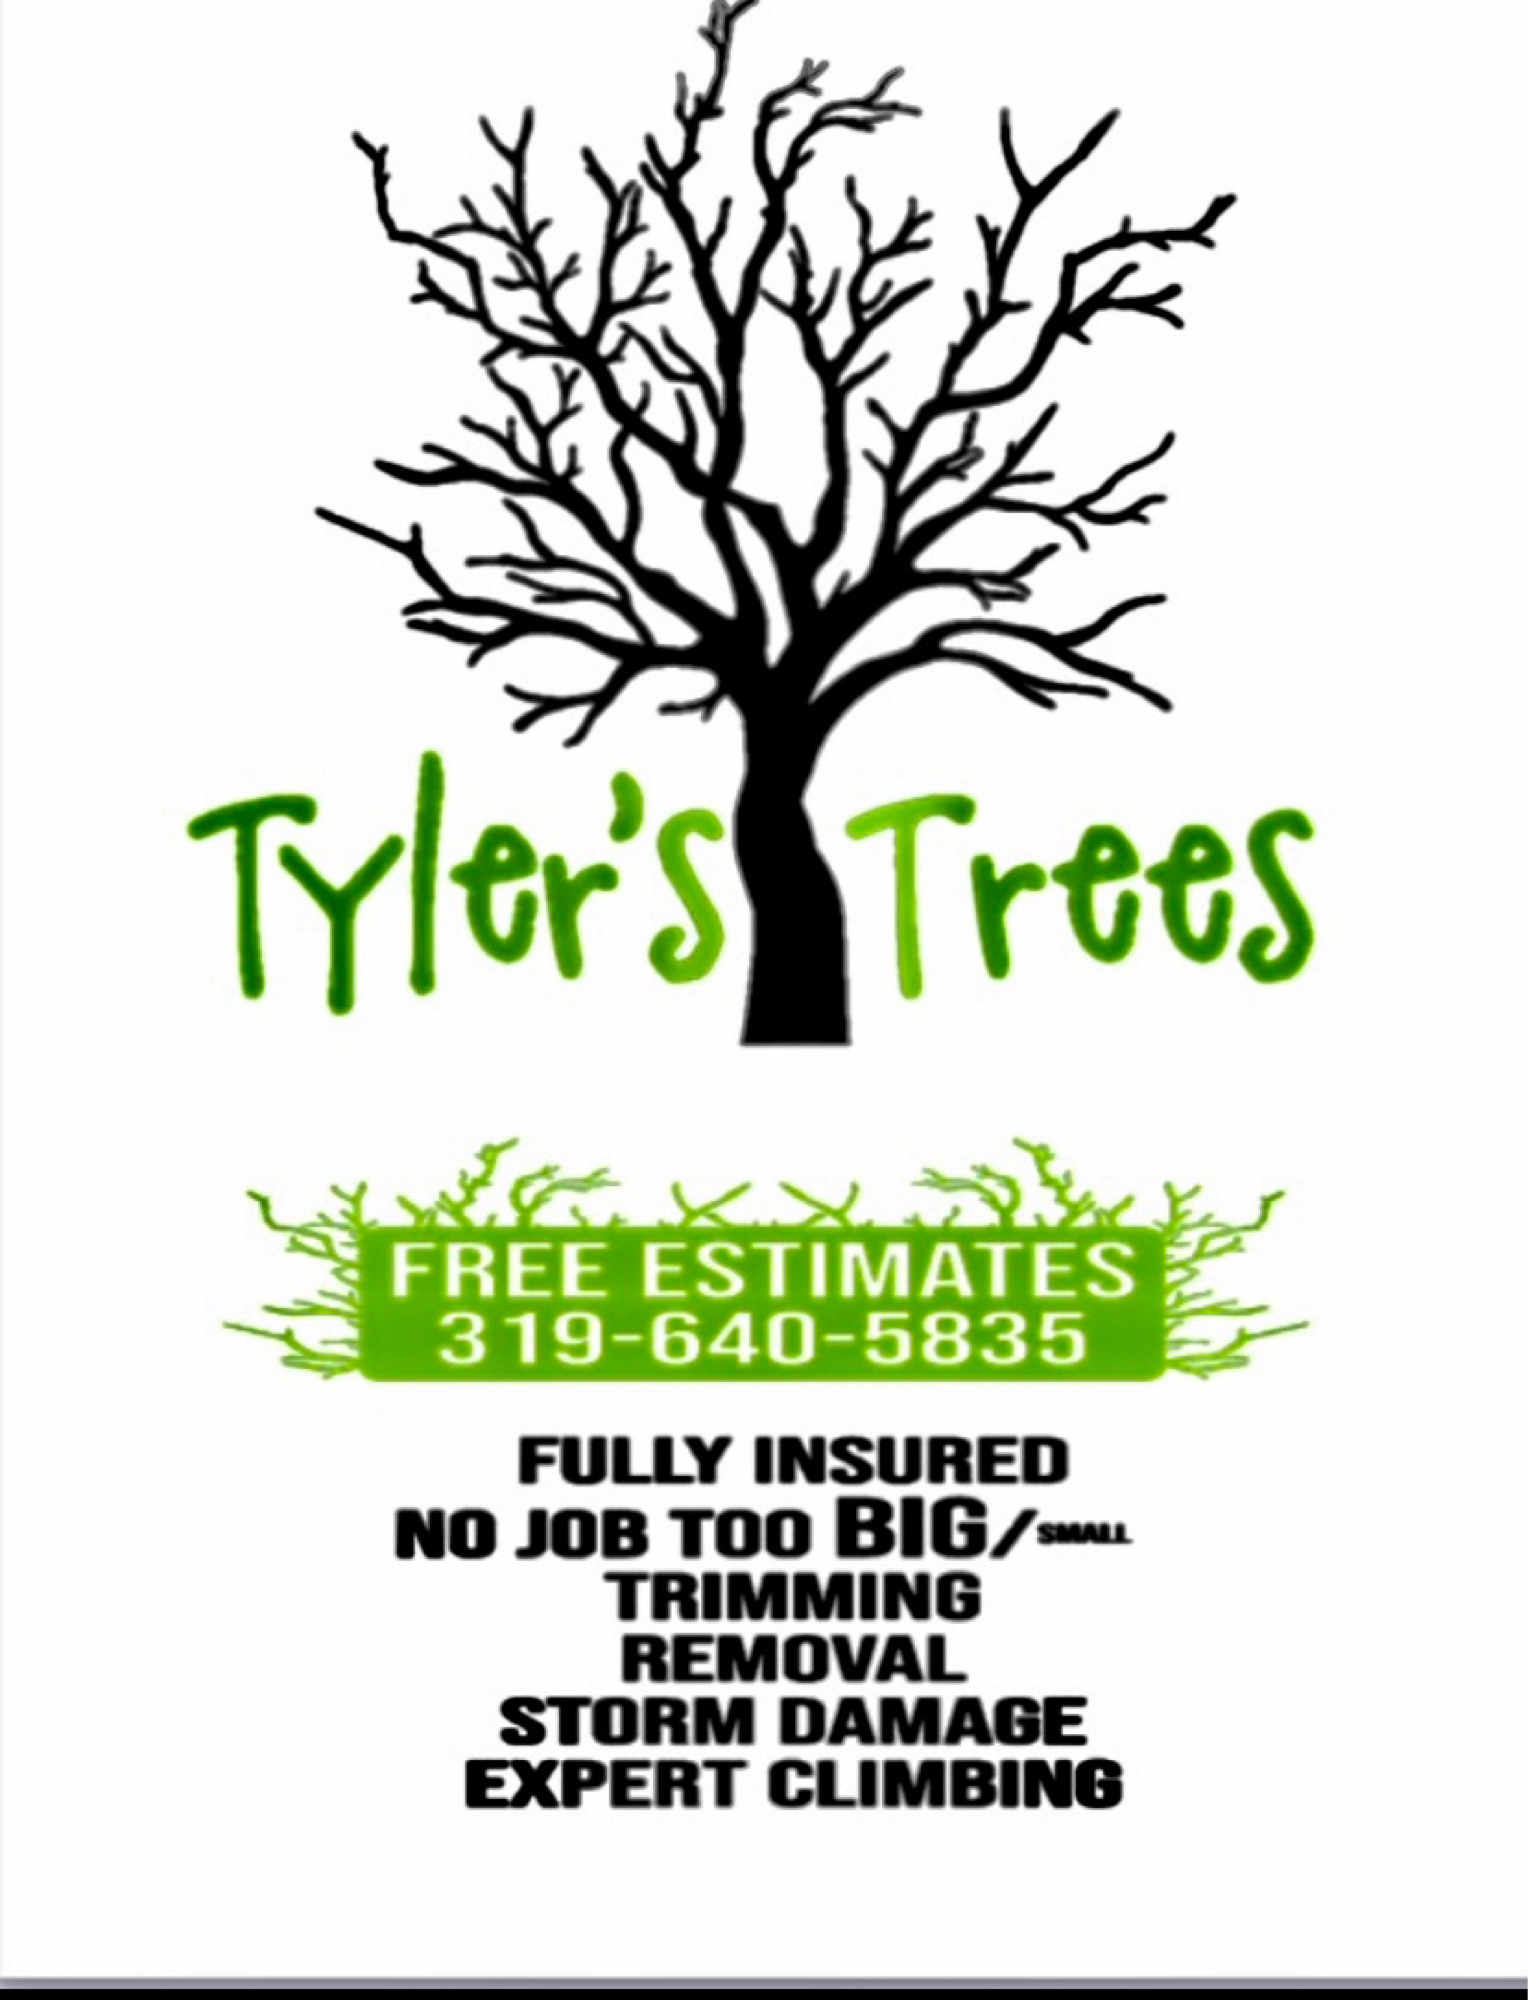 Tyler's Trees Logo